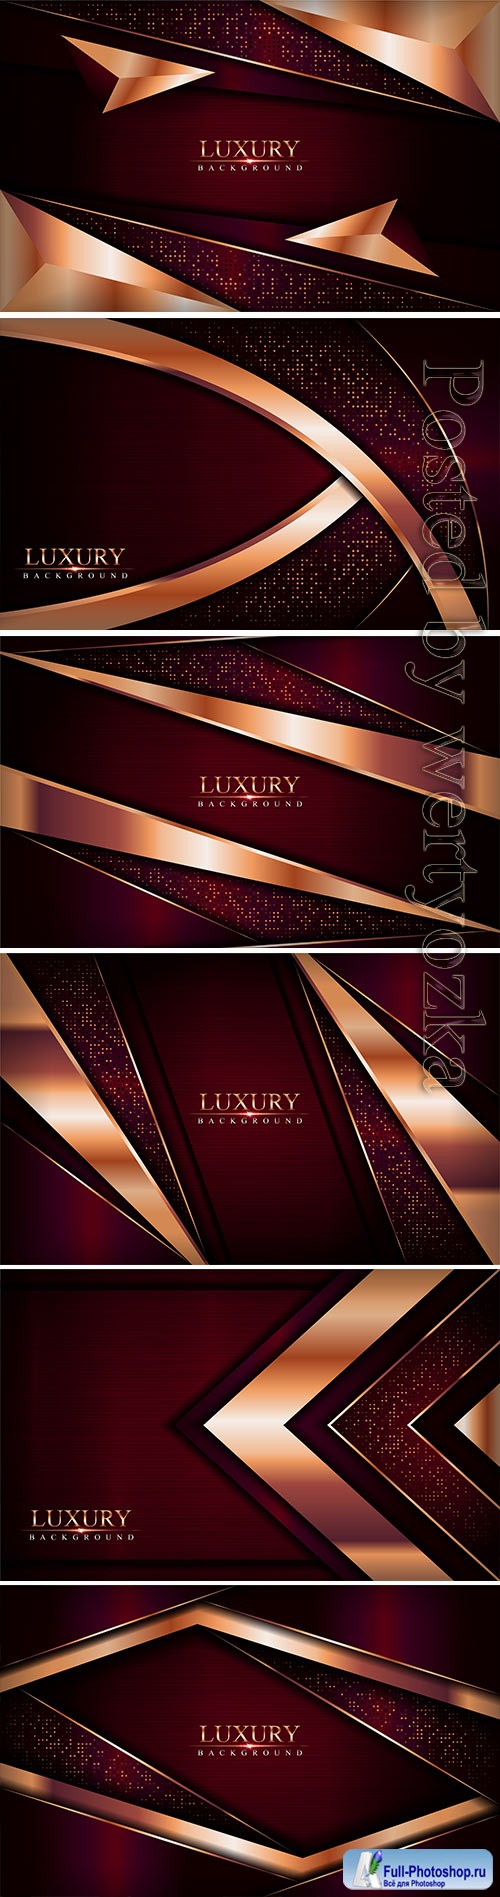 Luxury dark red vector background combine with golden bronze lines element